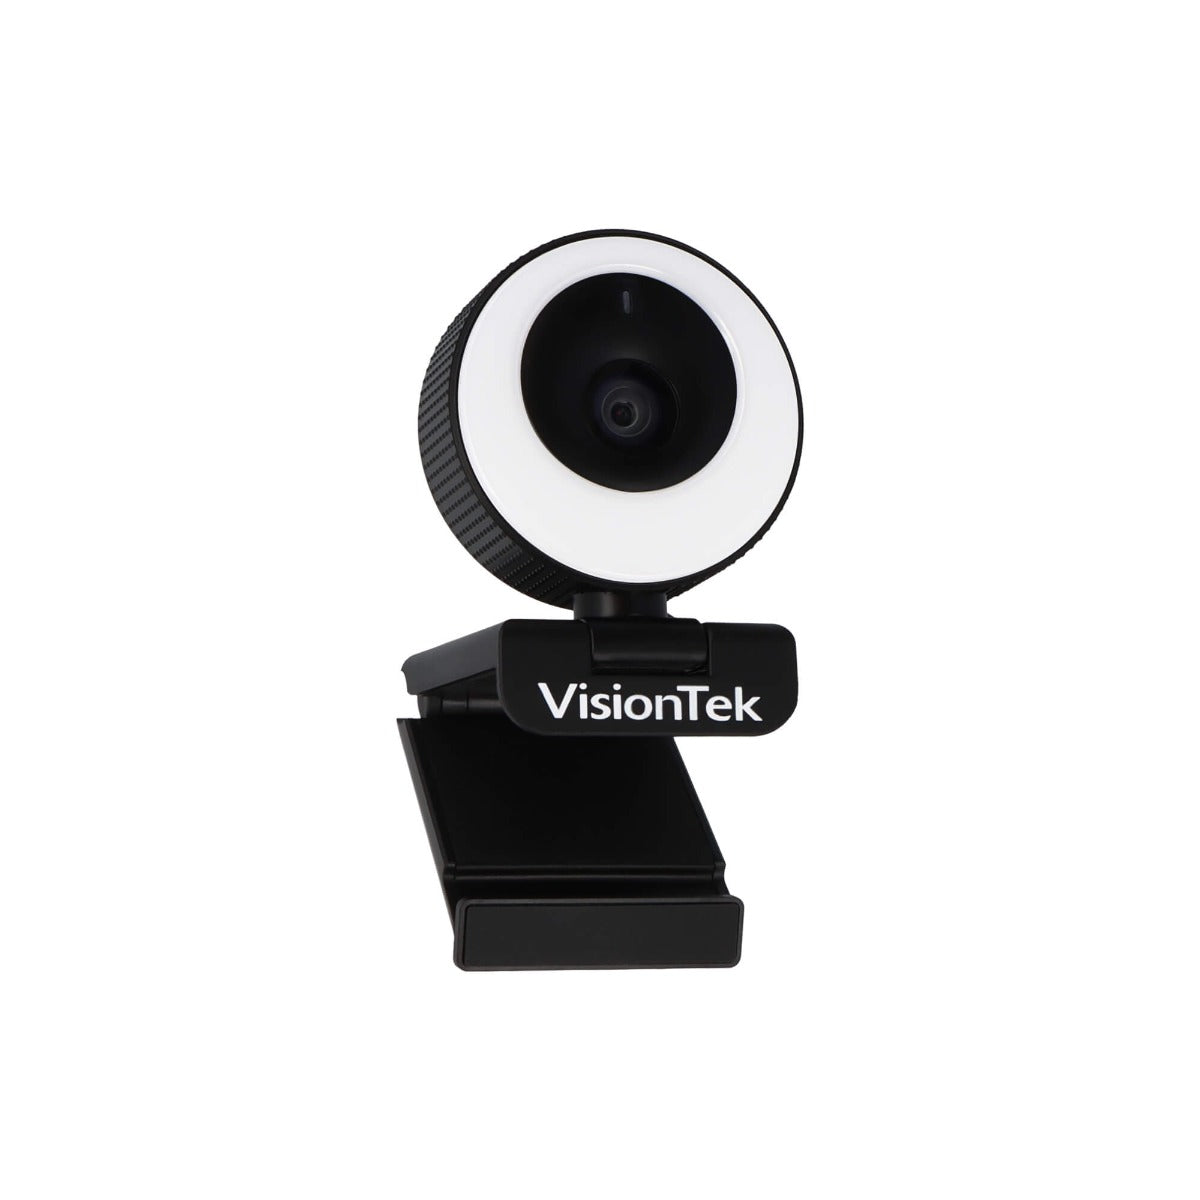 VTWC40 Premium Autofocus Full HD 1080p Webcam